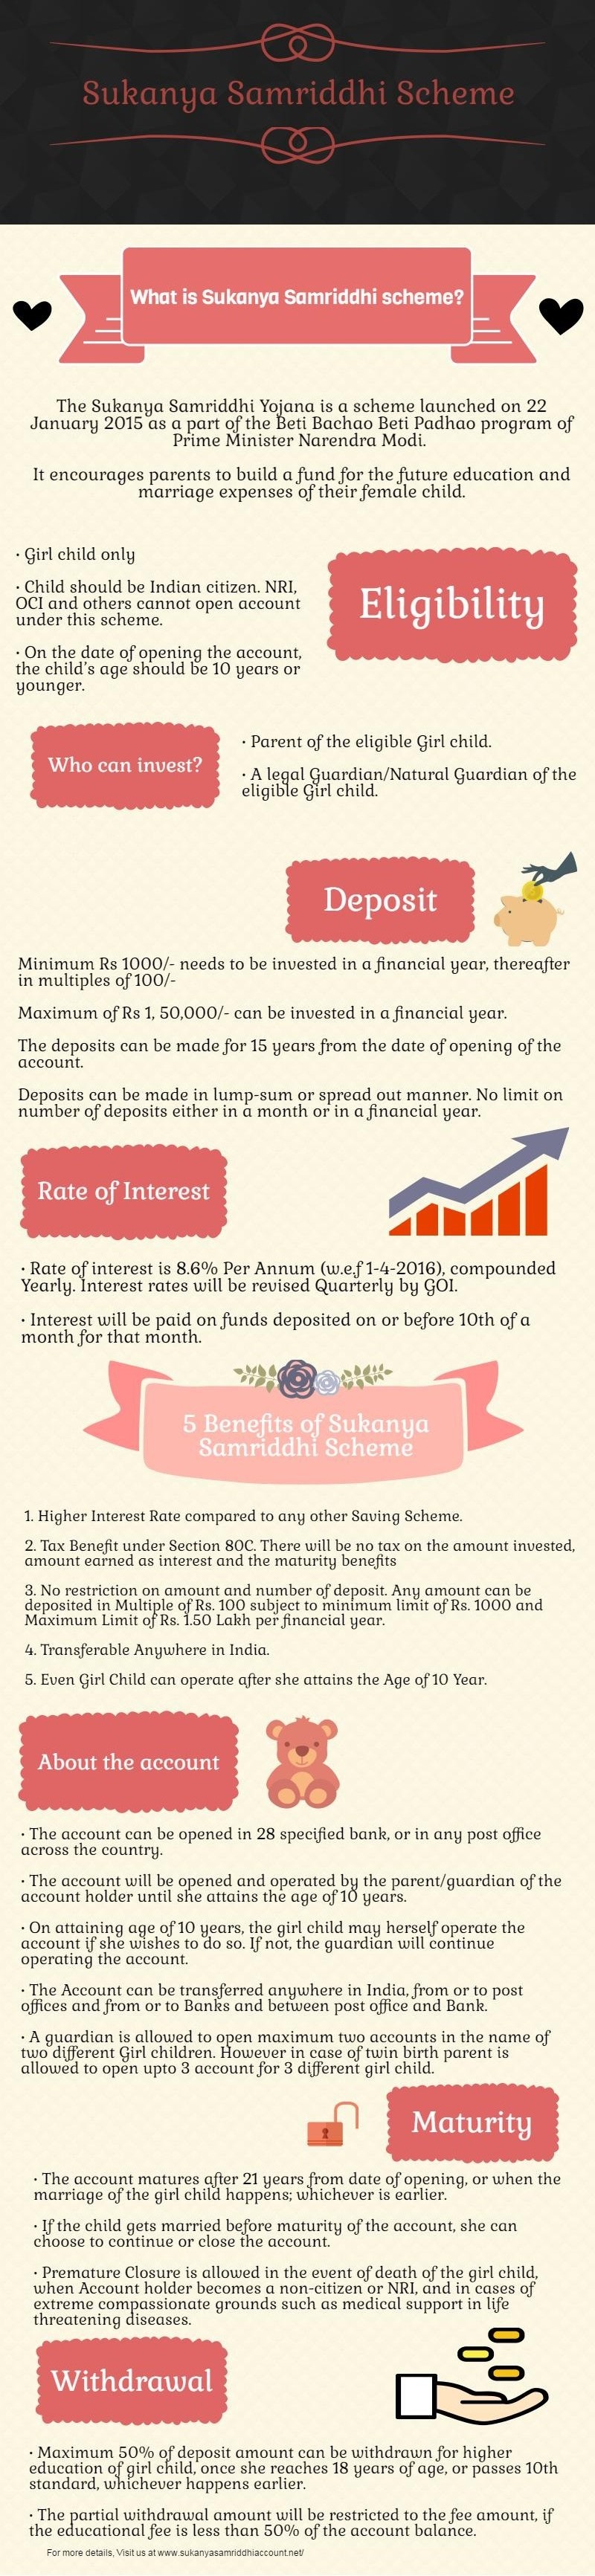 1sukanya-samriddhi-account-infographic